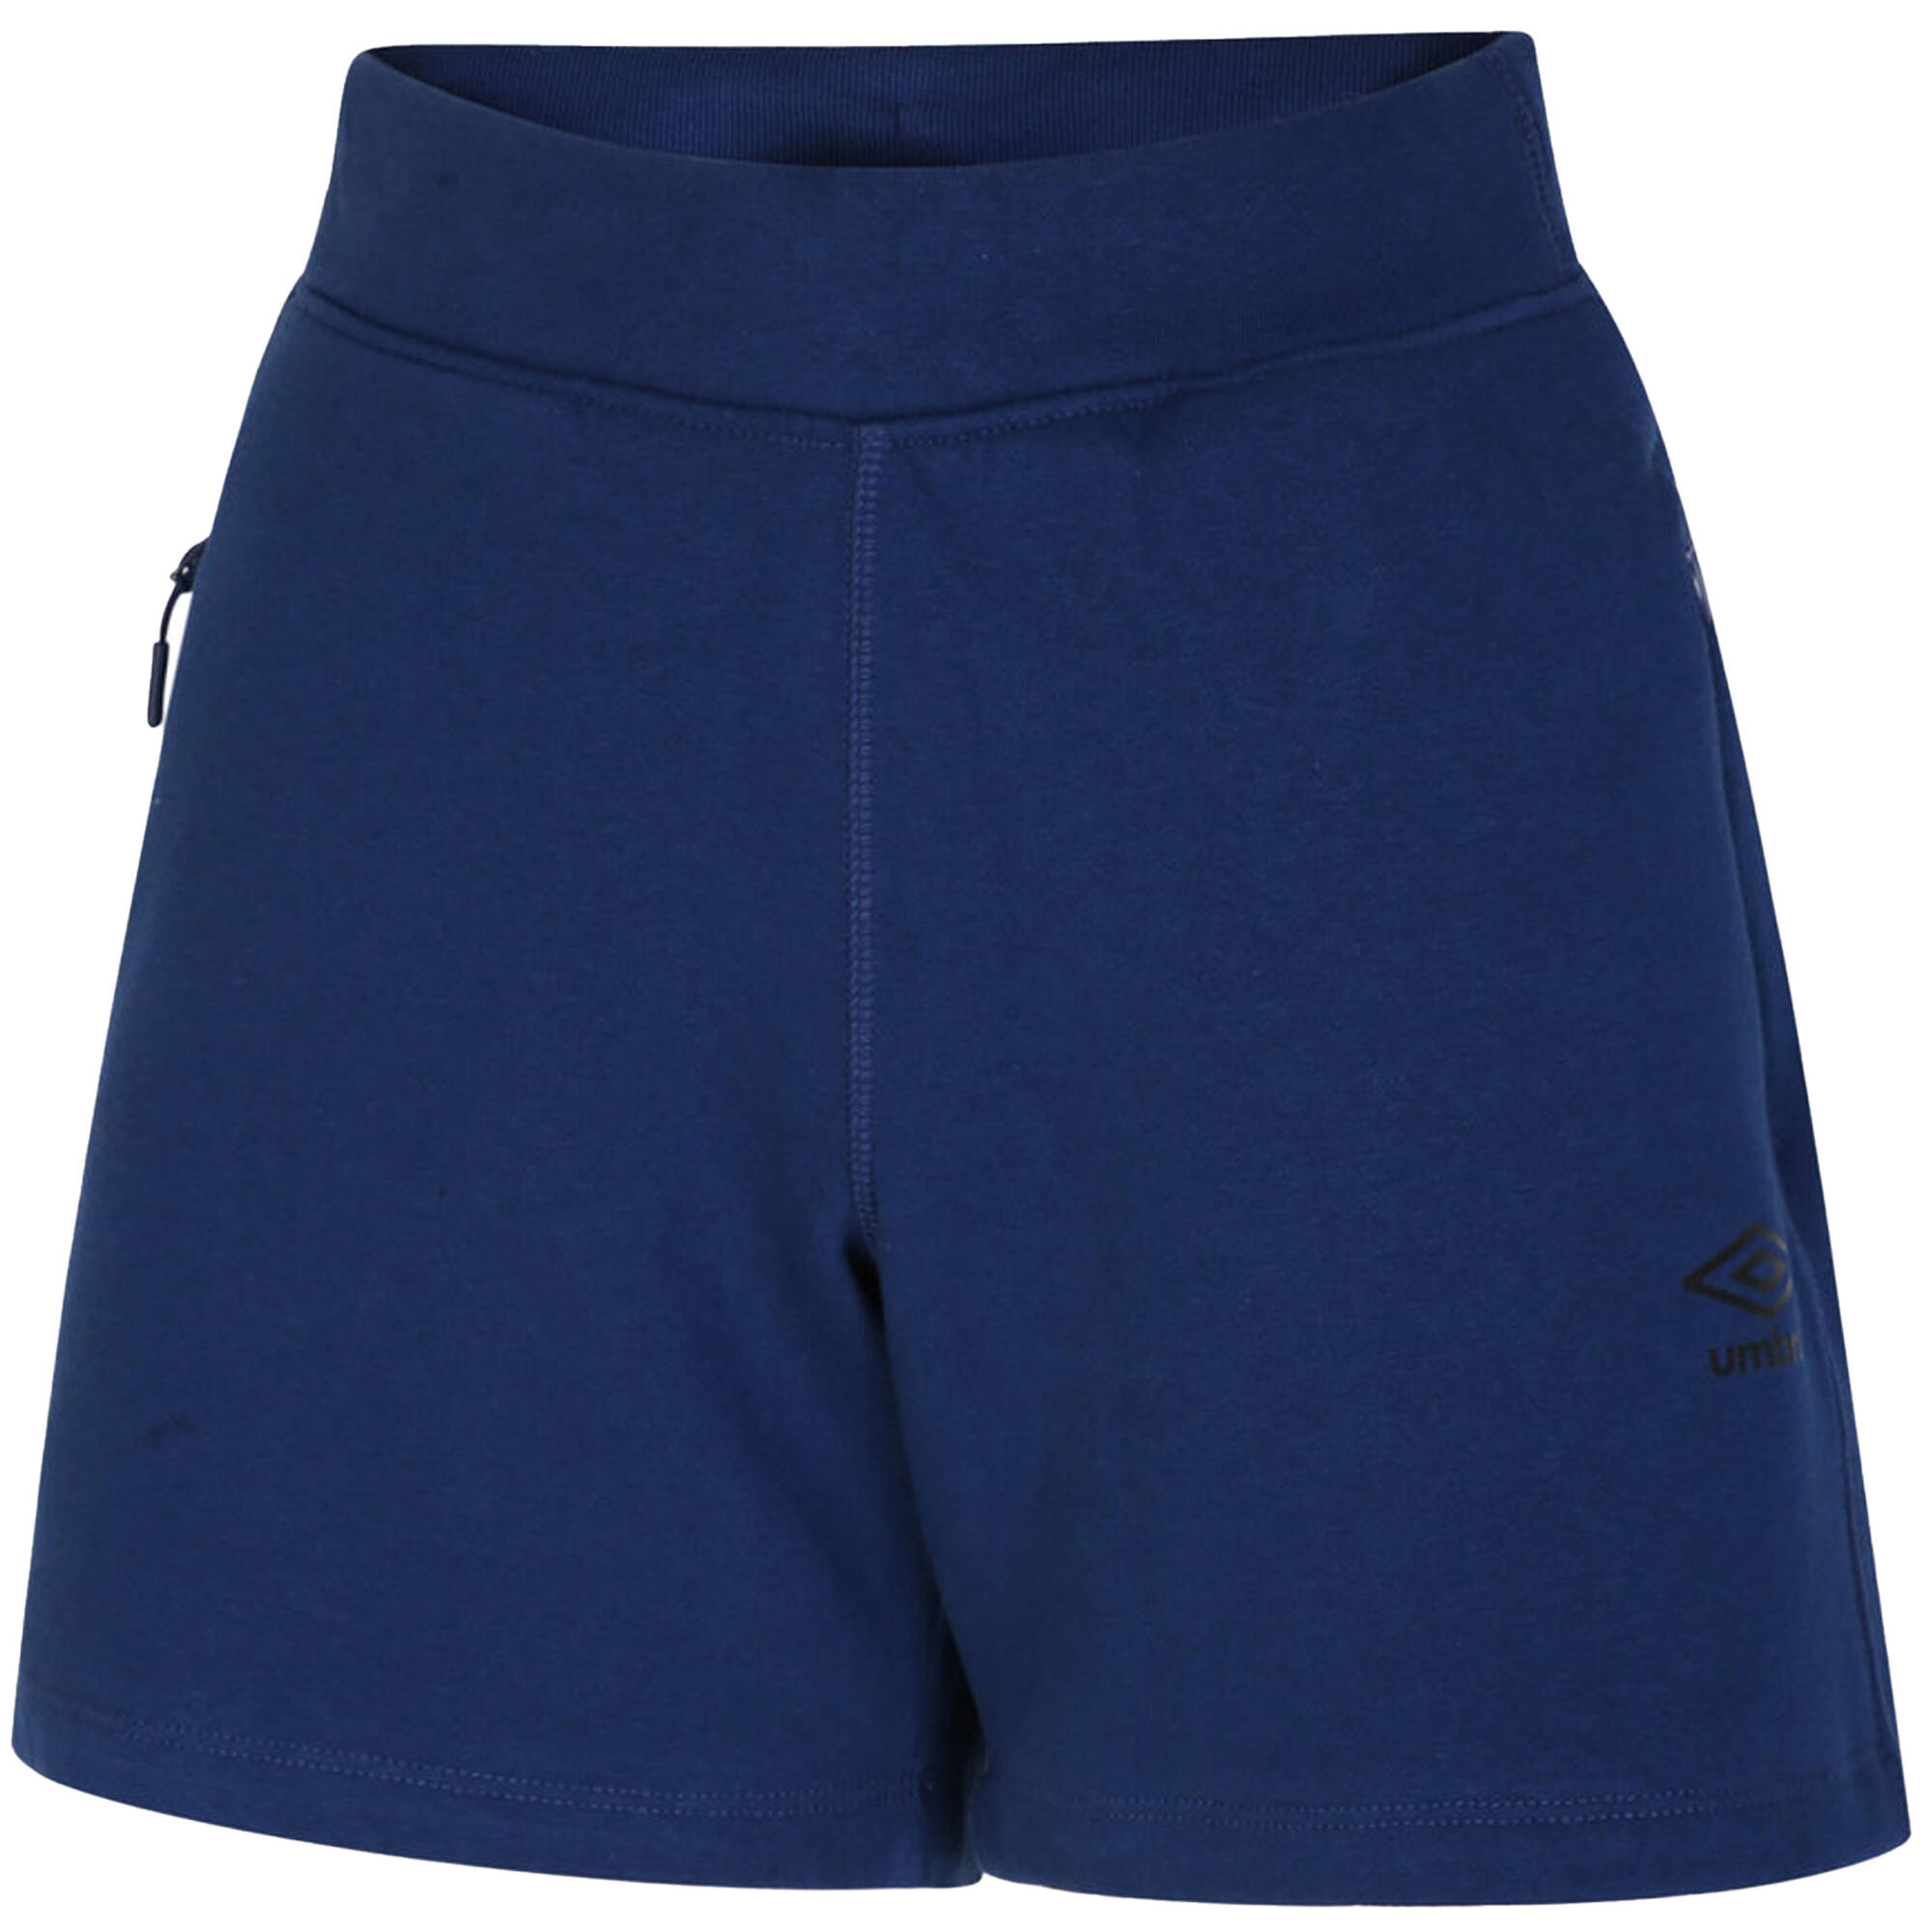 UMBRO Womens/Ladies Pro Elite Fleece Shorts (Navy)